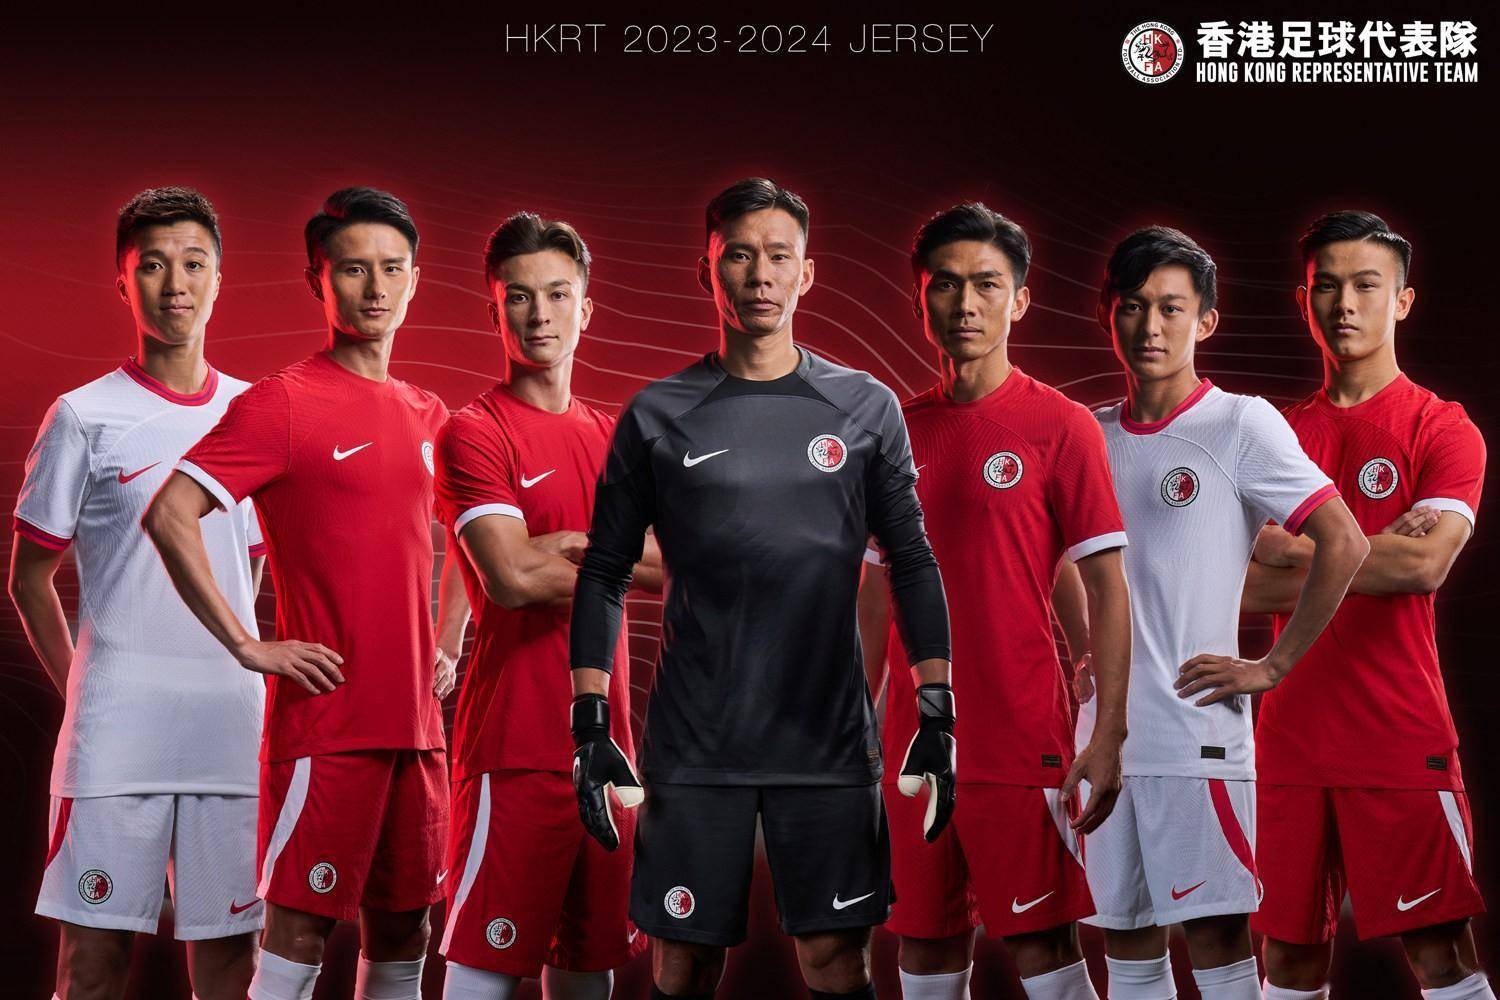 耐克发布香港足球代表队2023/24年主客场球衣